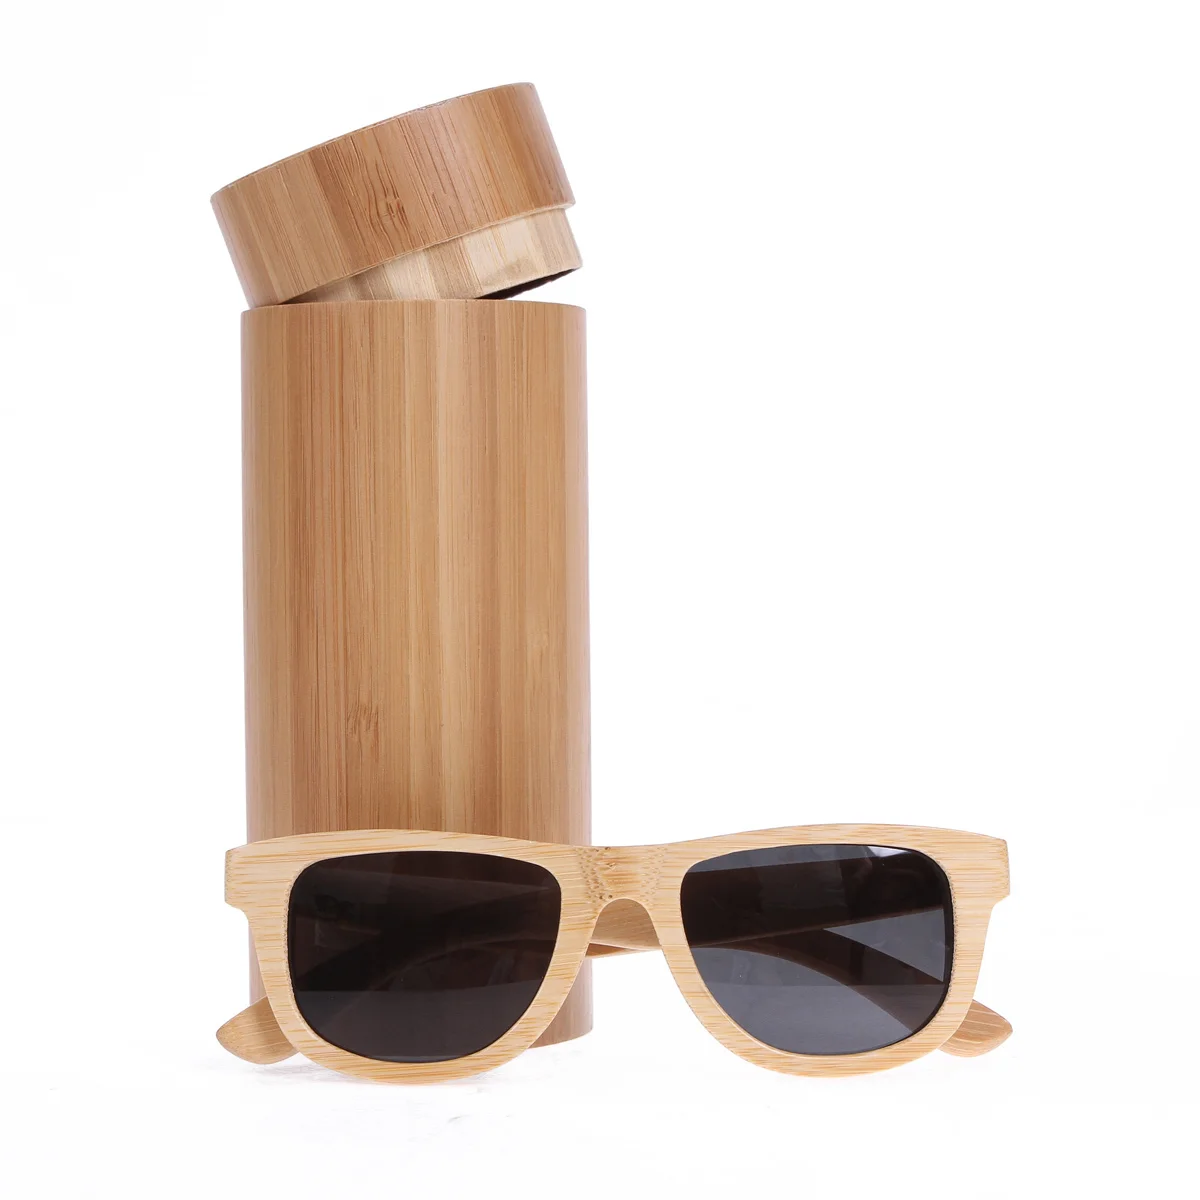 BerWer маленькие натуральные бамбуковые солнцезащитные очки для мужчин деревянные солнцезащитные очки поляризованные солнцезащитные очки линзы UV400